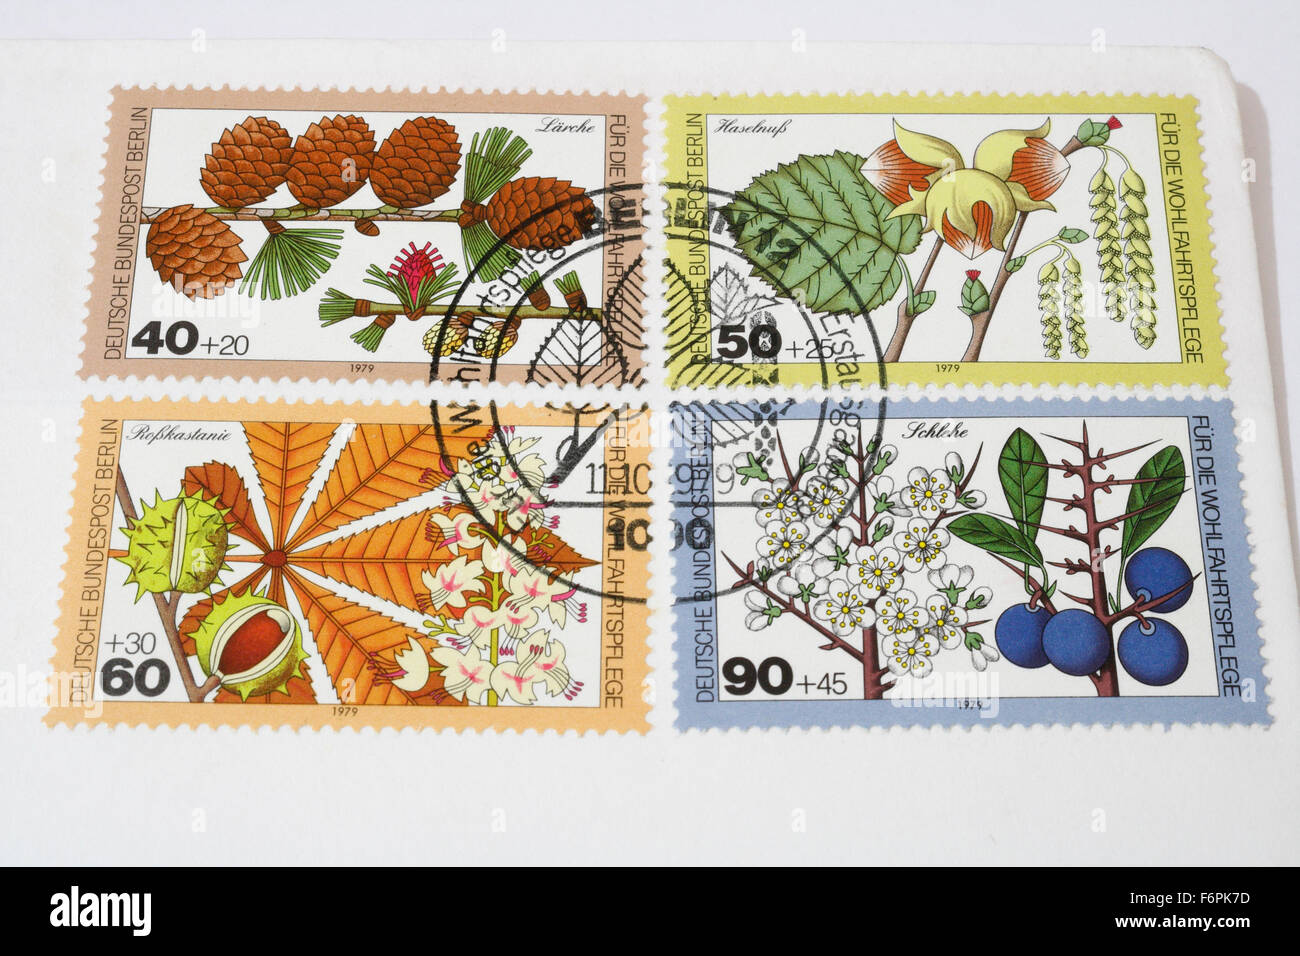 Ersten Tag Deutsche Deutsche Bundespost Berlin Briefmarken Von 1979